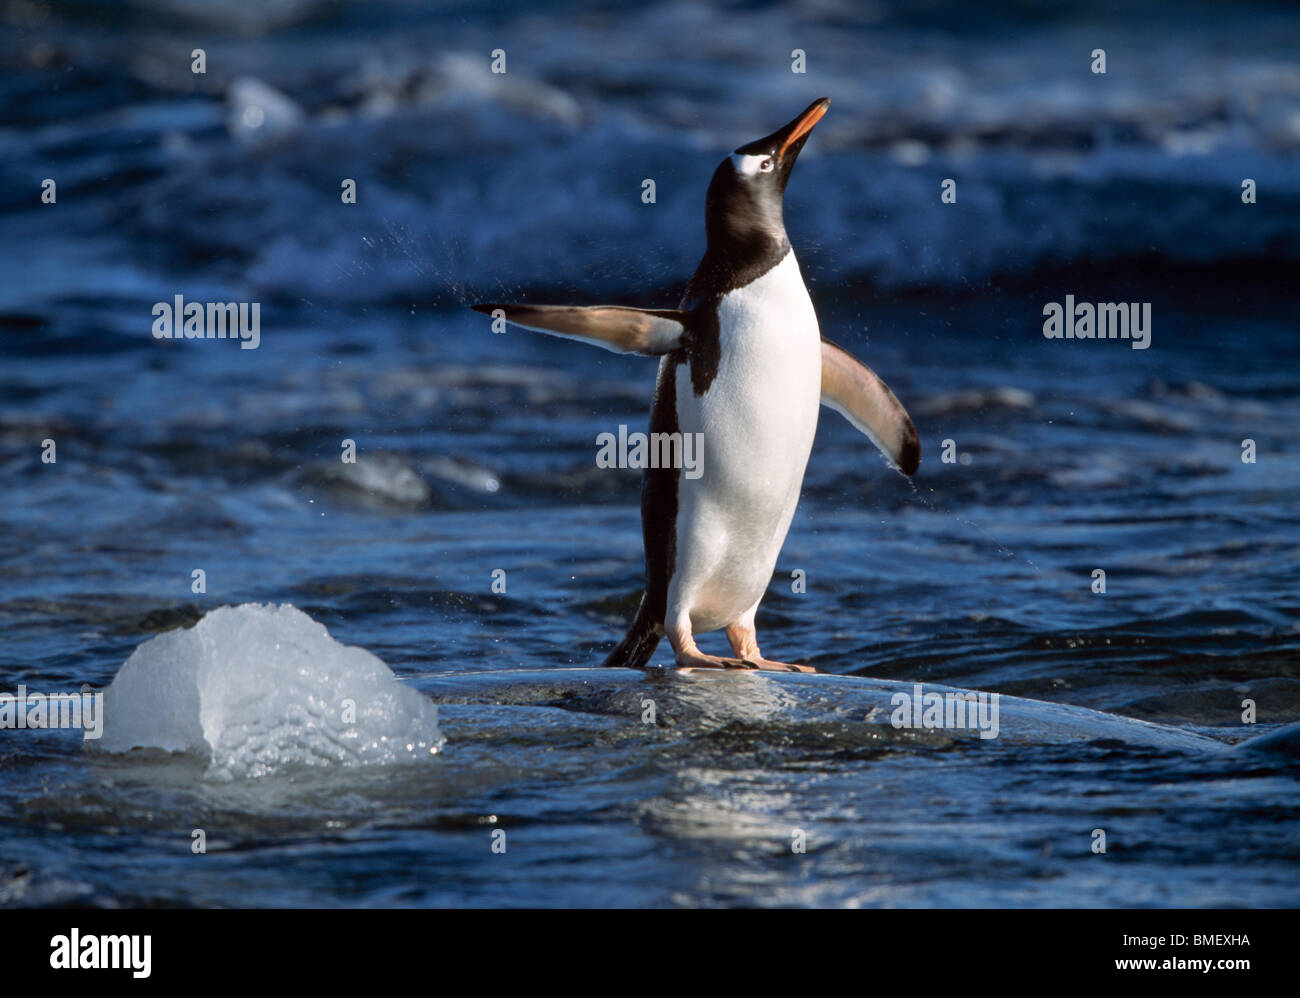 Gentoo penguin shaking off water, Peterman Island, Antarctica Stock Photo